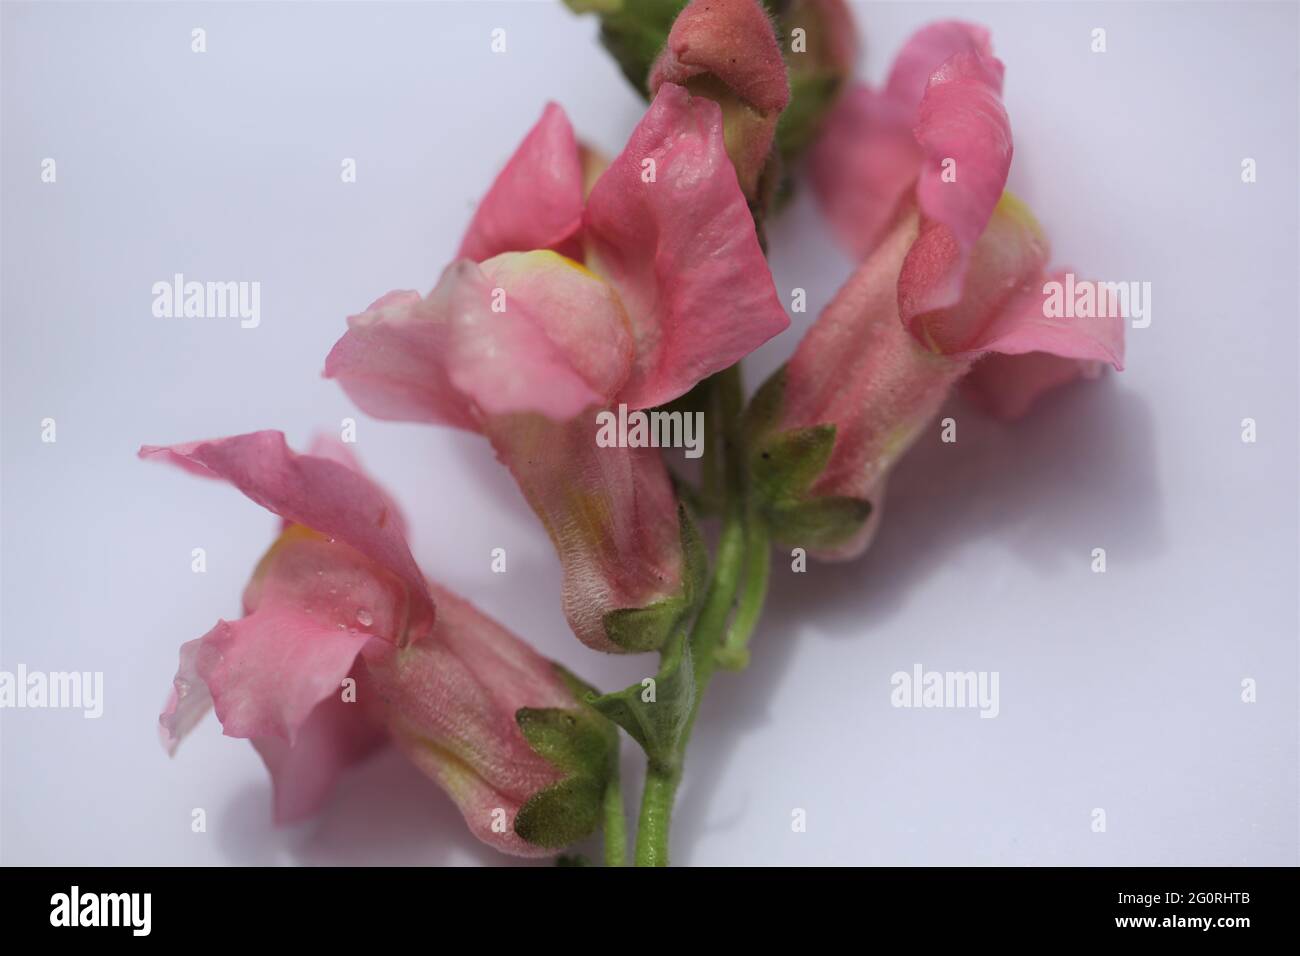 Fleurs de Snapdragon rose / Antirrhinum majus sur fond blanc Banque D'Images